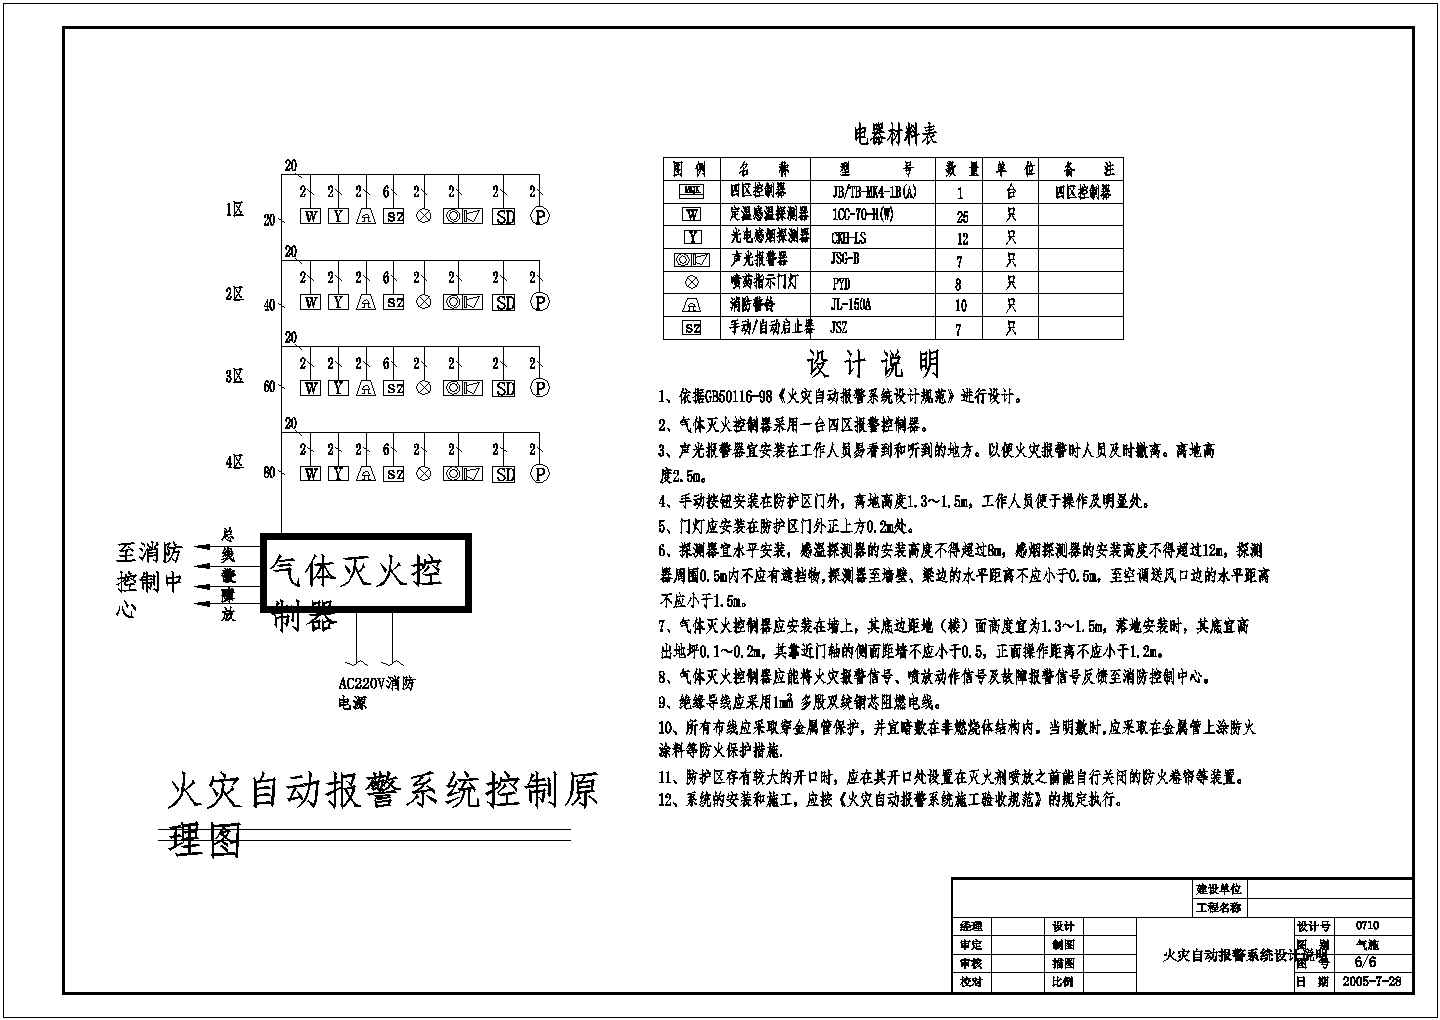 重庆政务大楼建筑内消防系统参考图